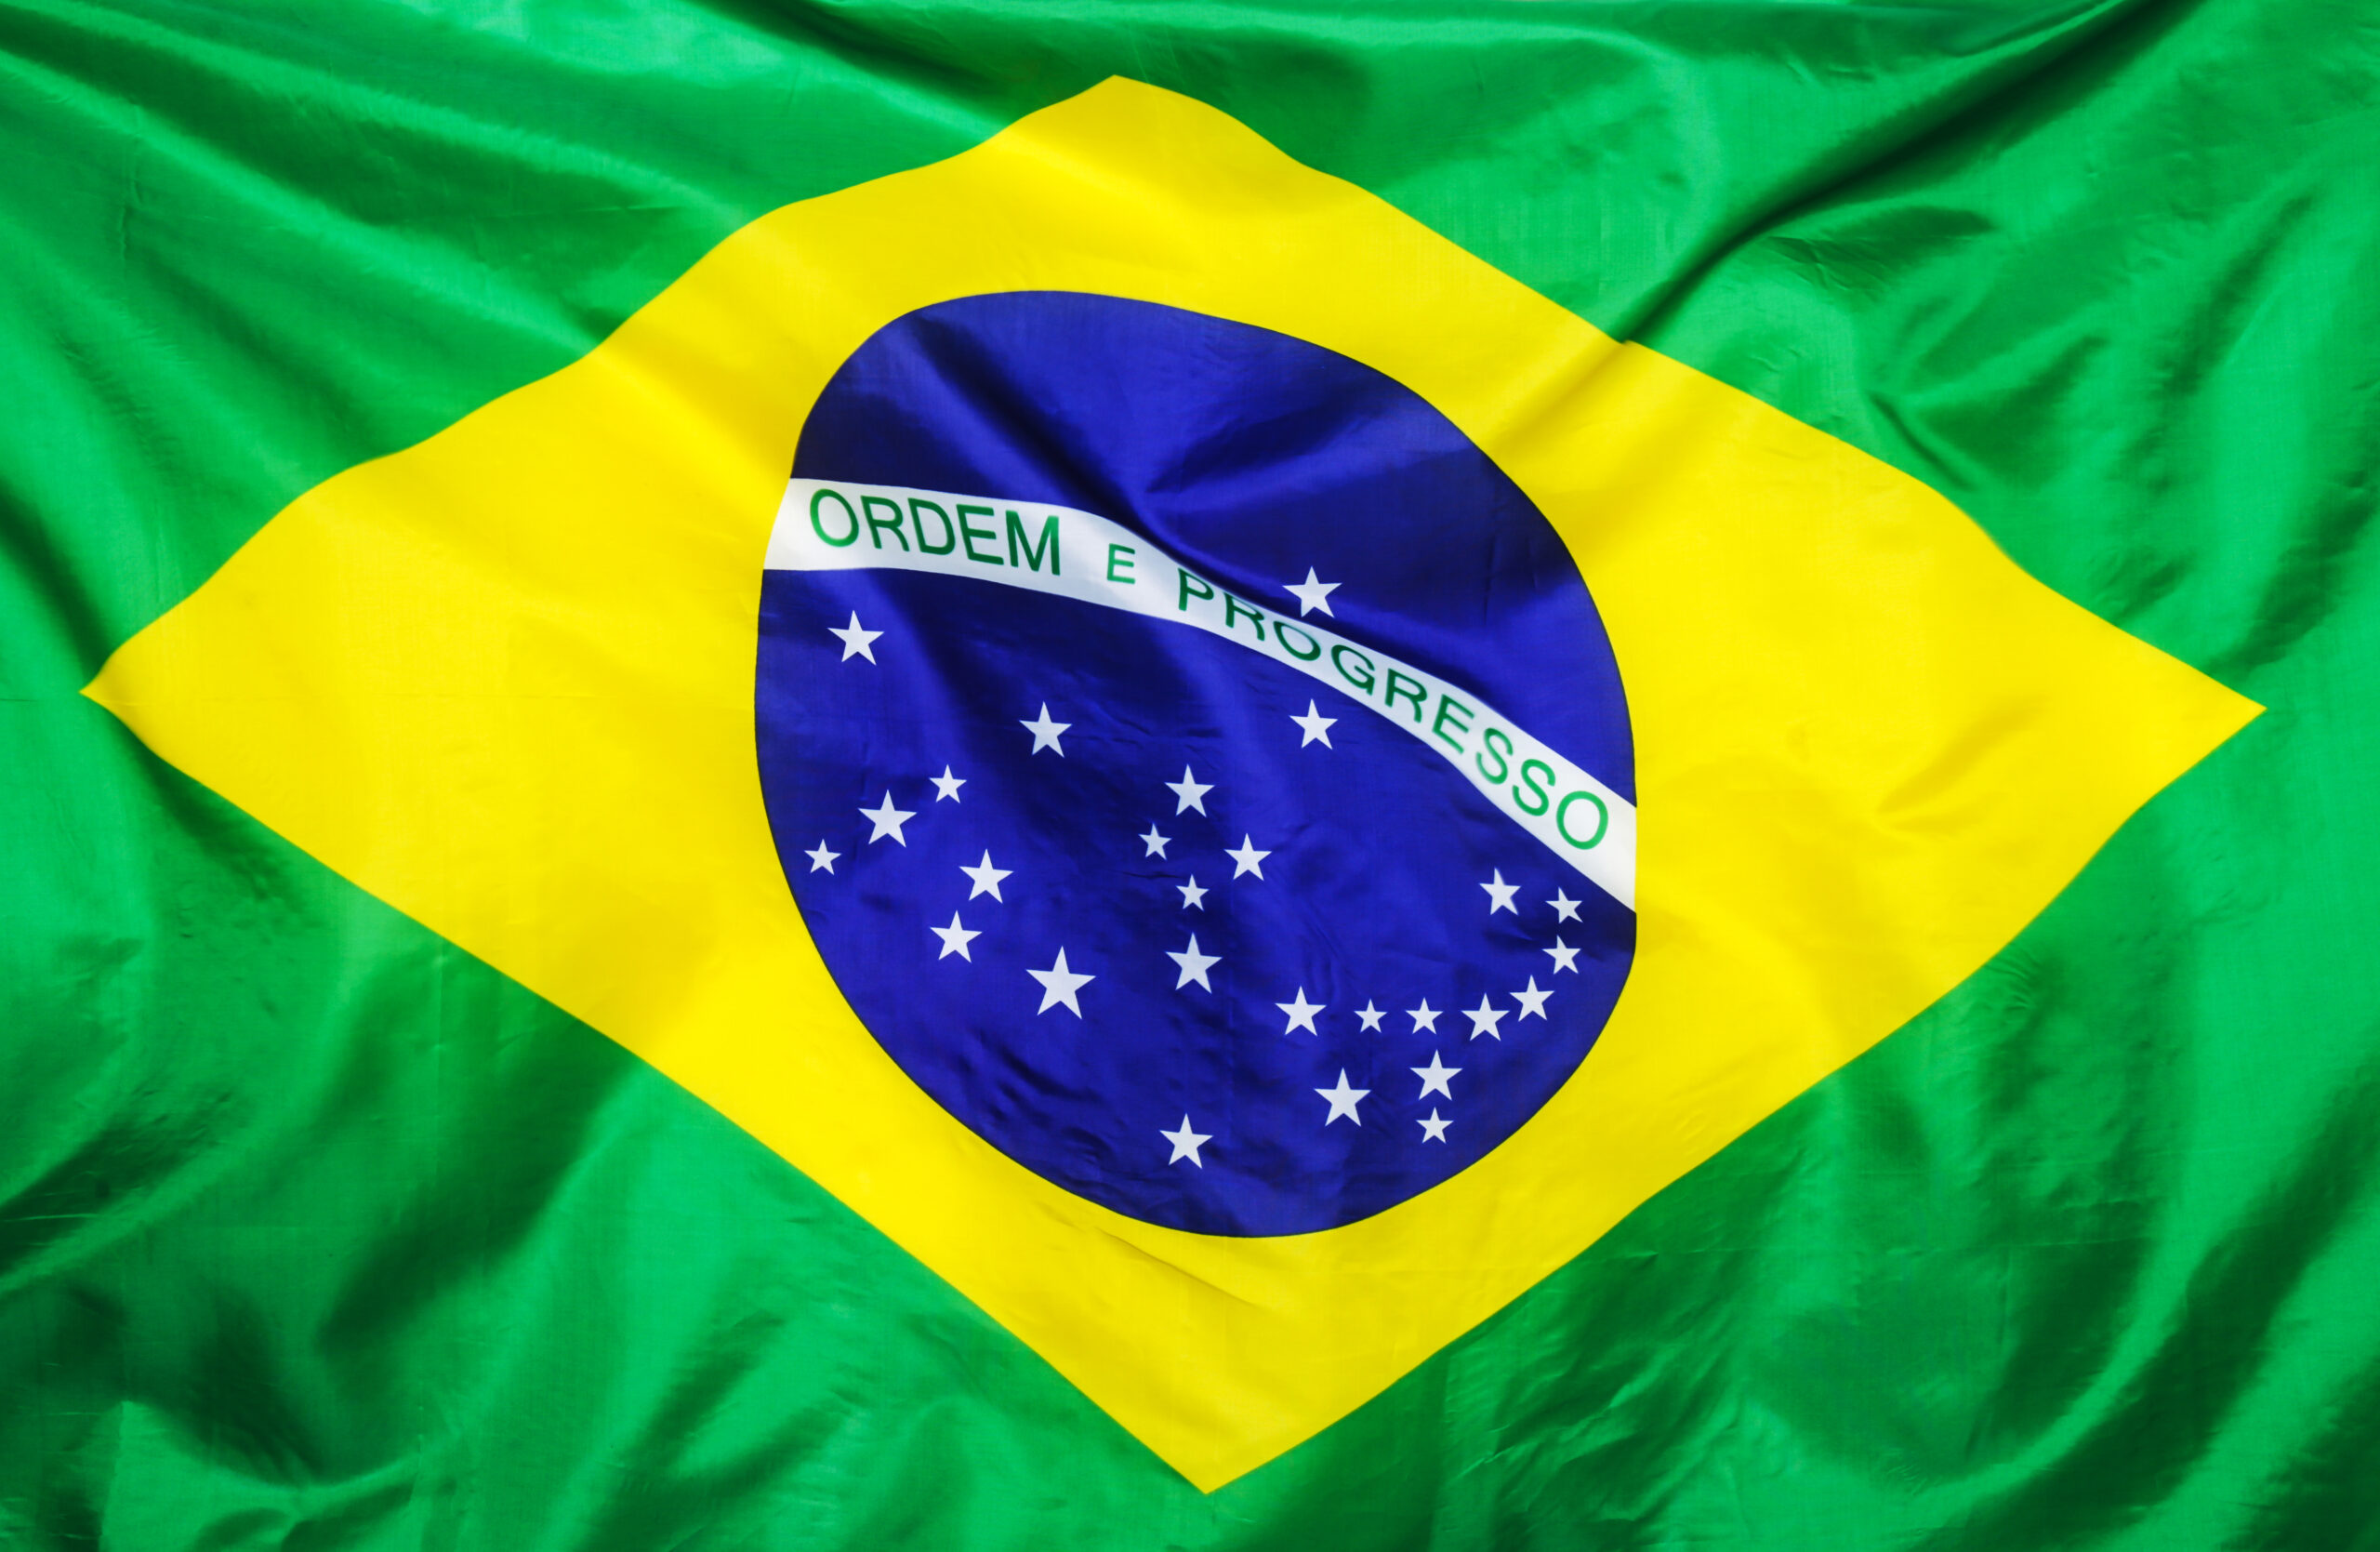 Нападающий сборной Бразилии Эндрик призвал не сравнивать его с Пеле